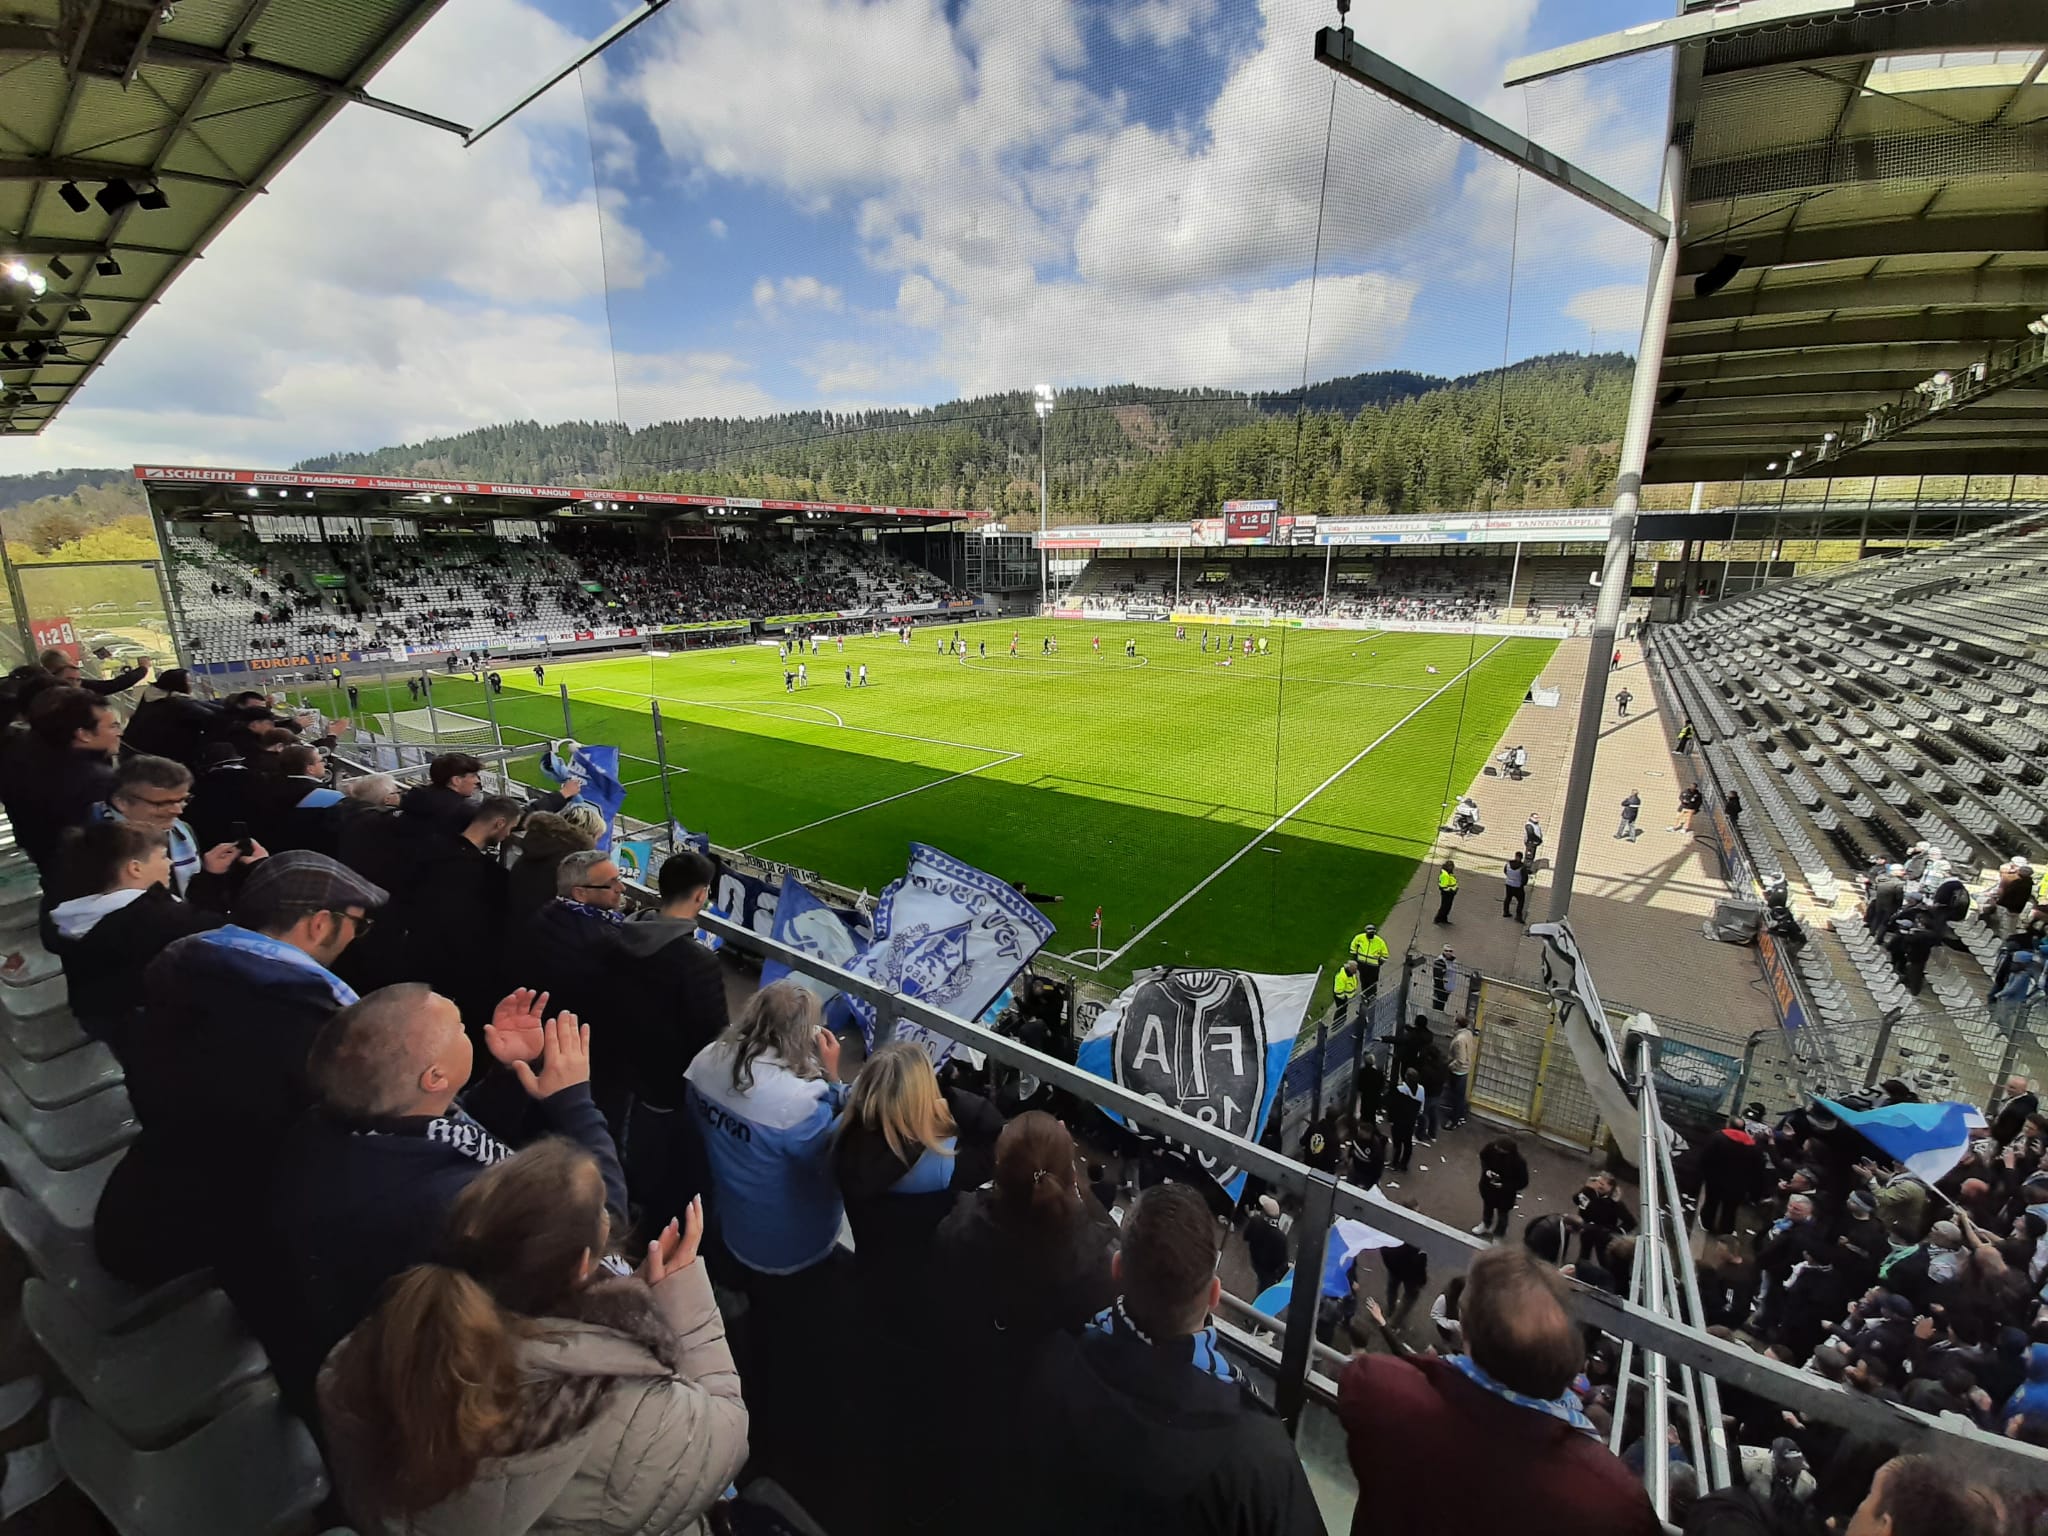 3. Liga: 1860 München - SC Freiburg II - die Highlights, Fußball News